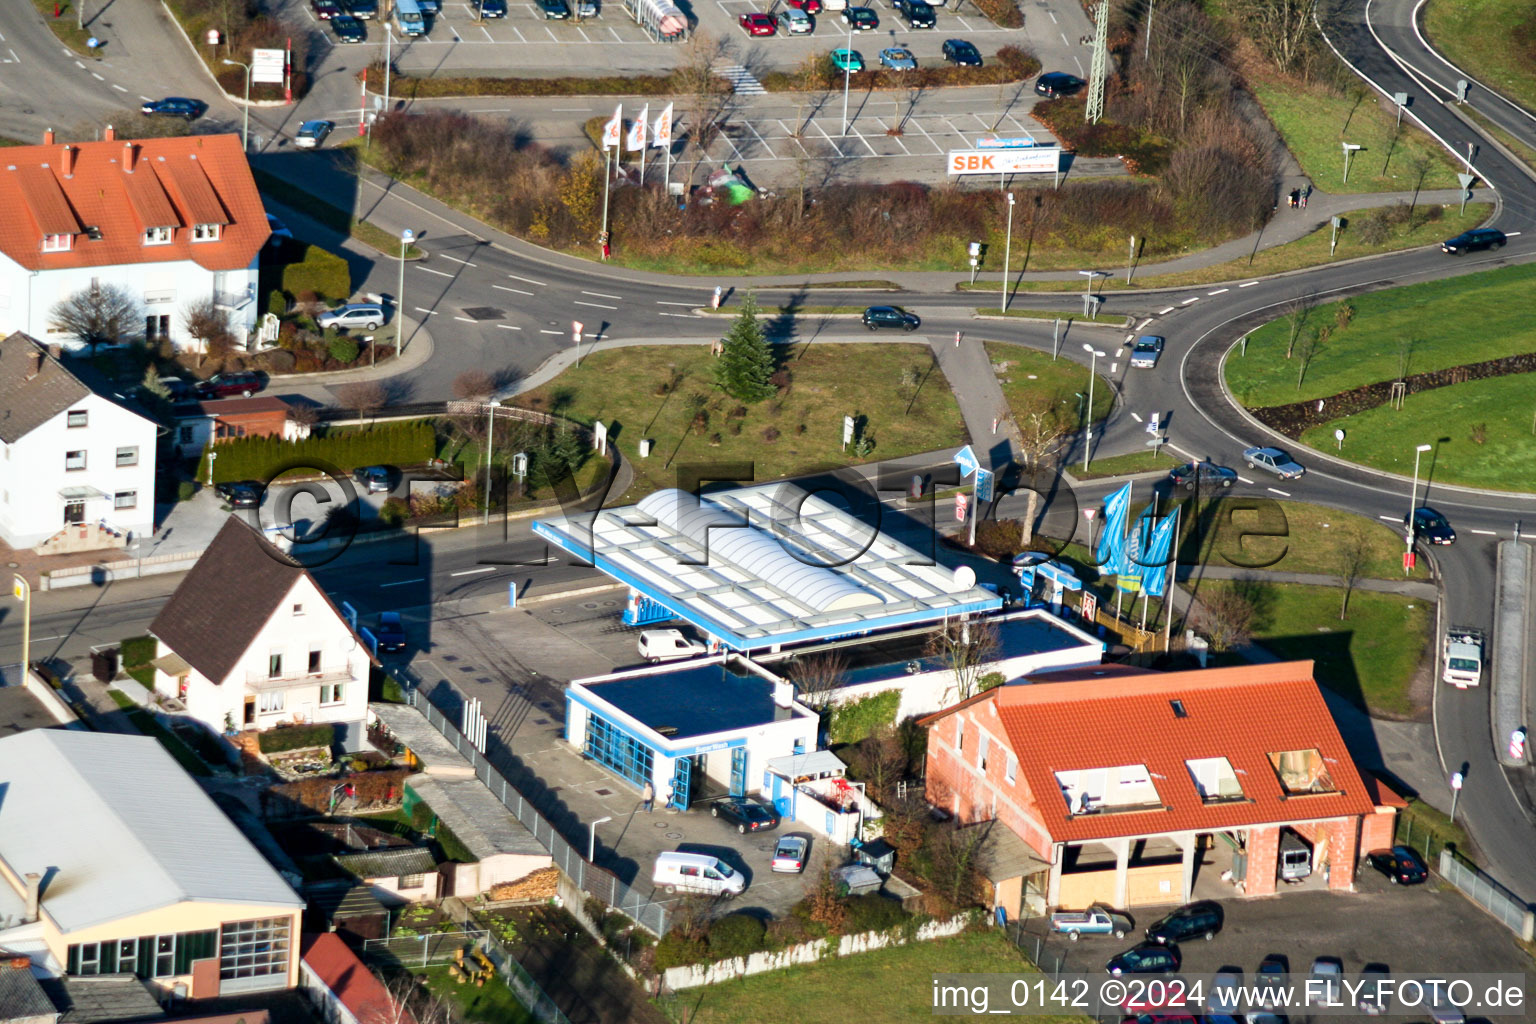 Tankstelle zum Verkauf von Benzin und Diesel- Kraftstoffen Aral Tankstelle Markus Götz in Kandel im Bundesland Rheinland-Pfalz, Deutschland